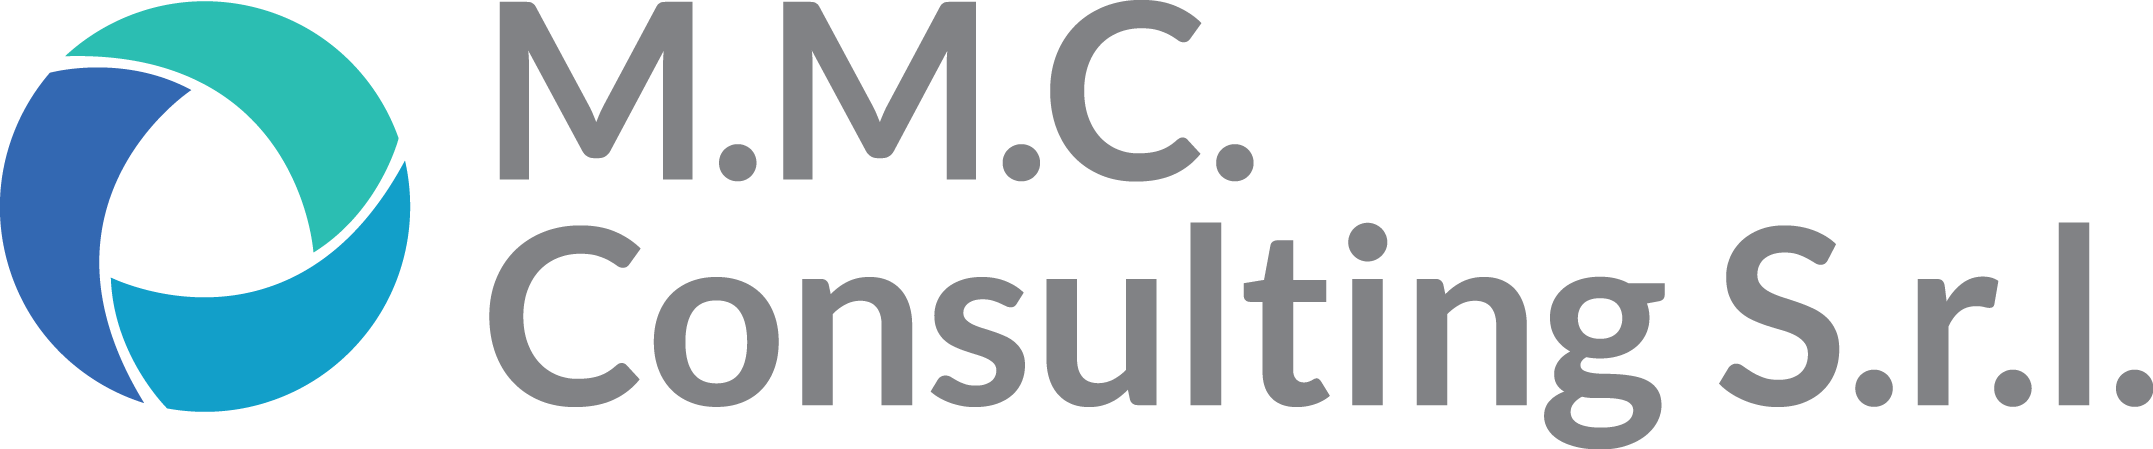 M.M.C. Consulting